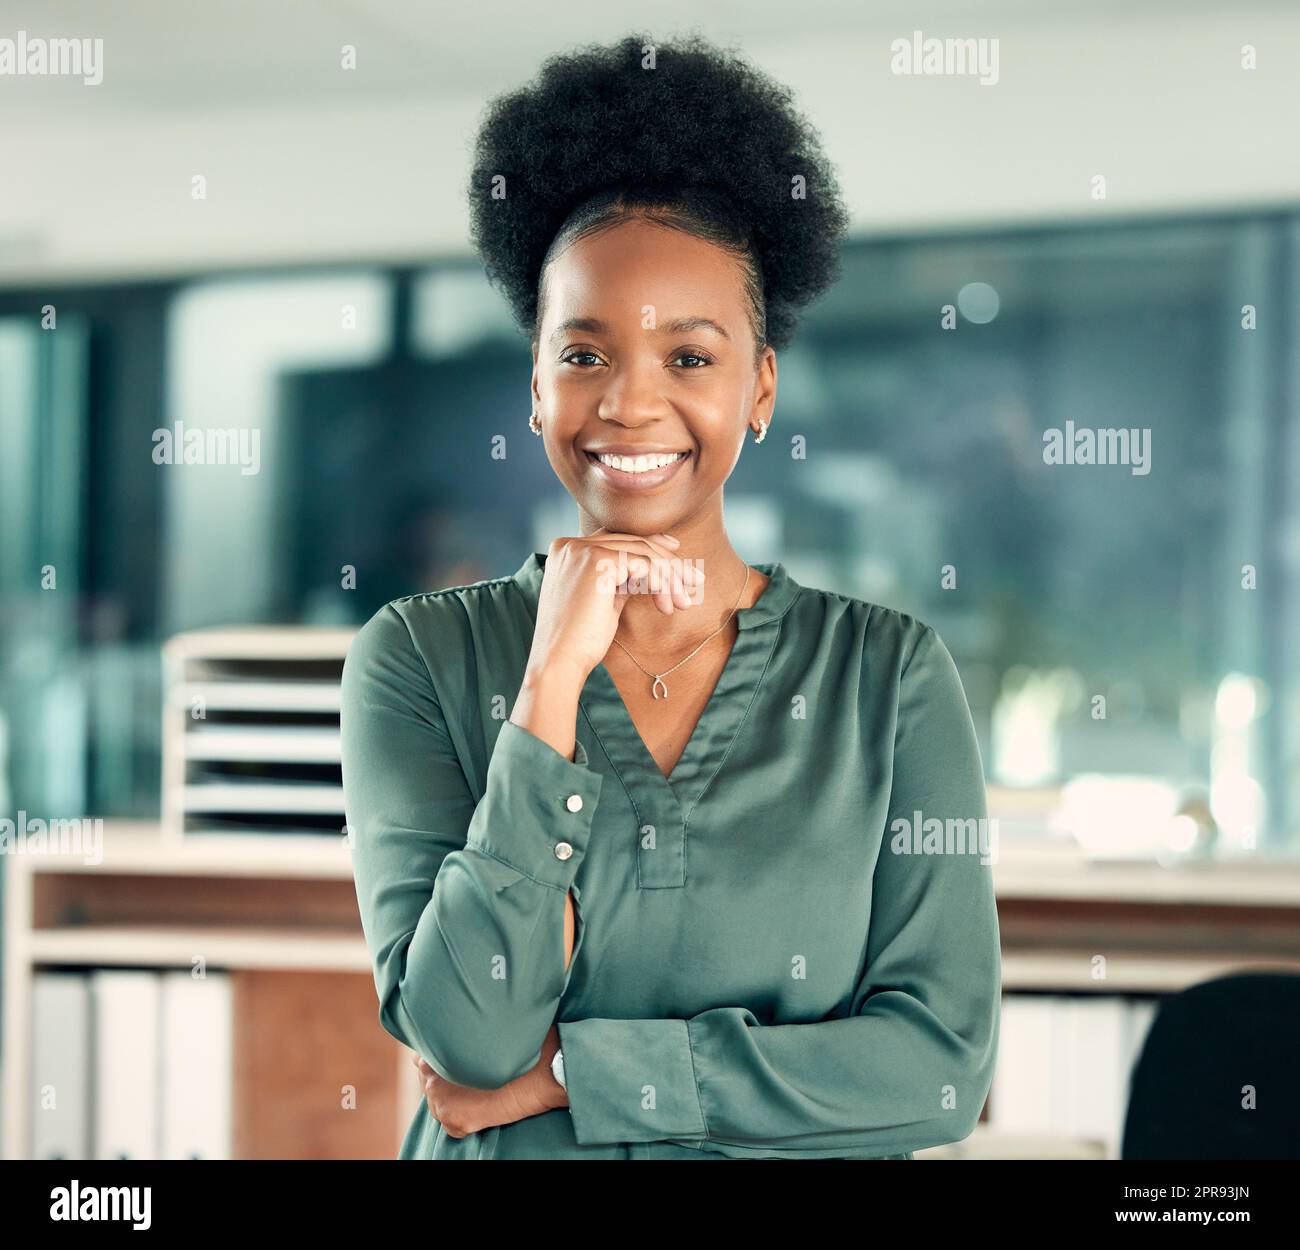 J'ai bien réussi dans ma carrière. Portrait d'une jeune femme d'affaires confiante debout dans un bureau. Banque D'Images